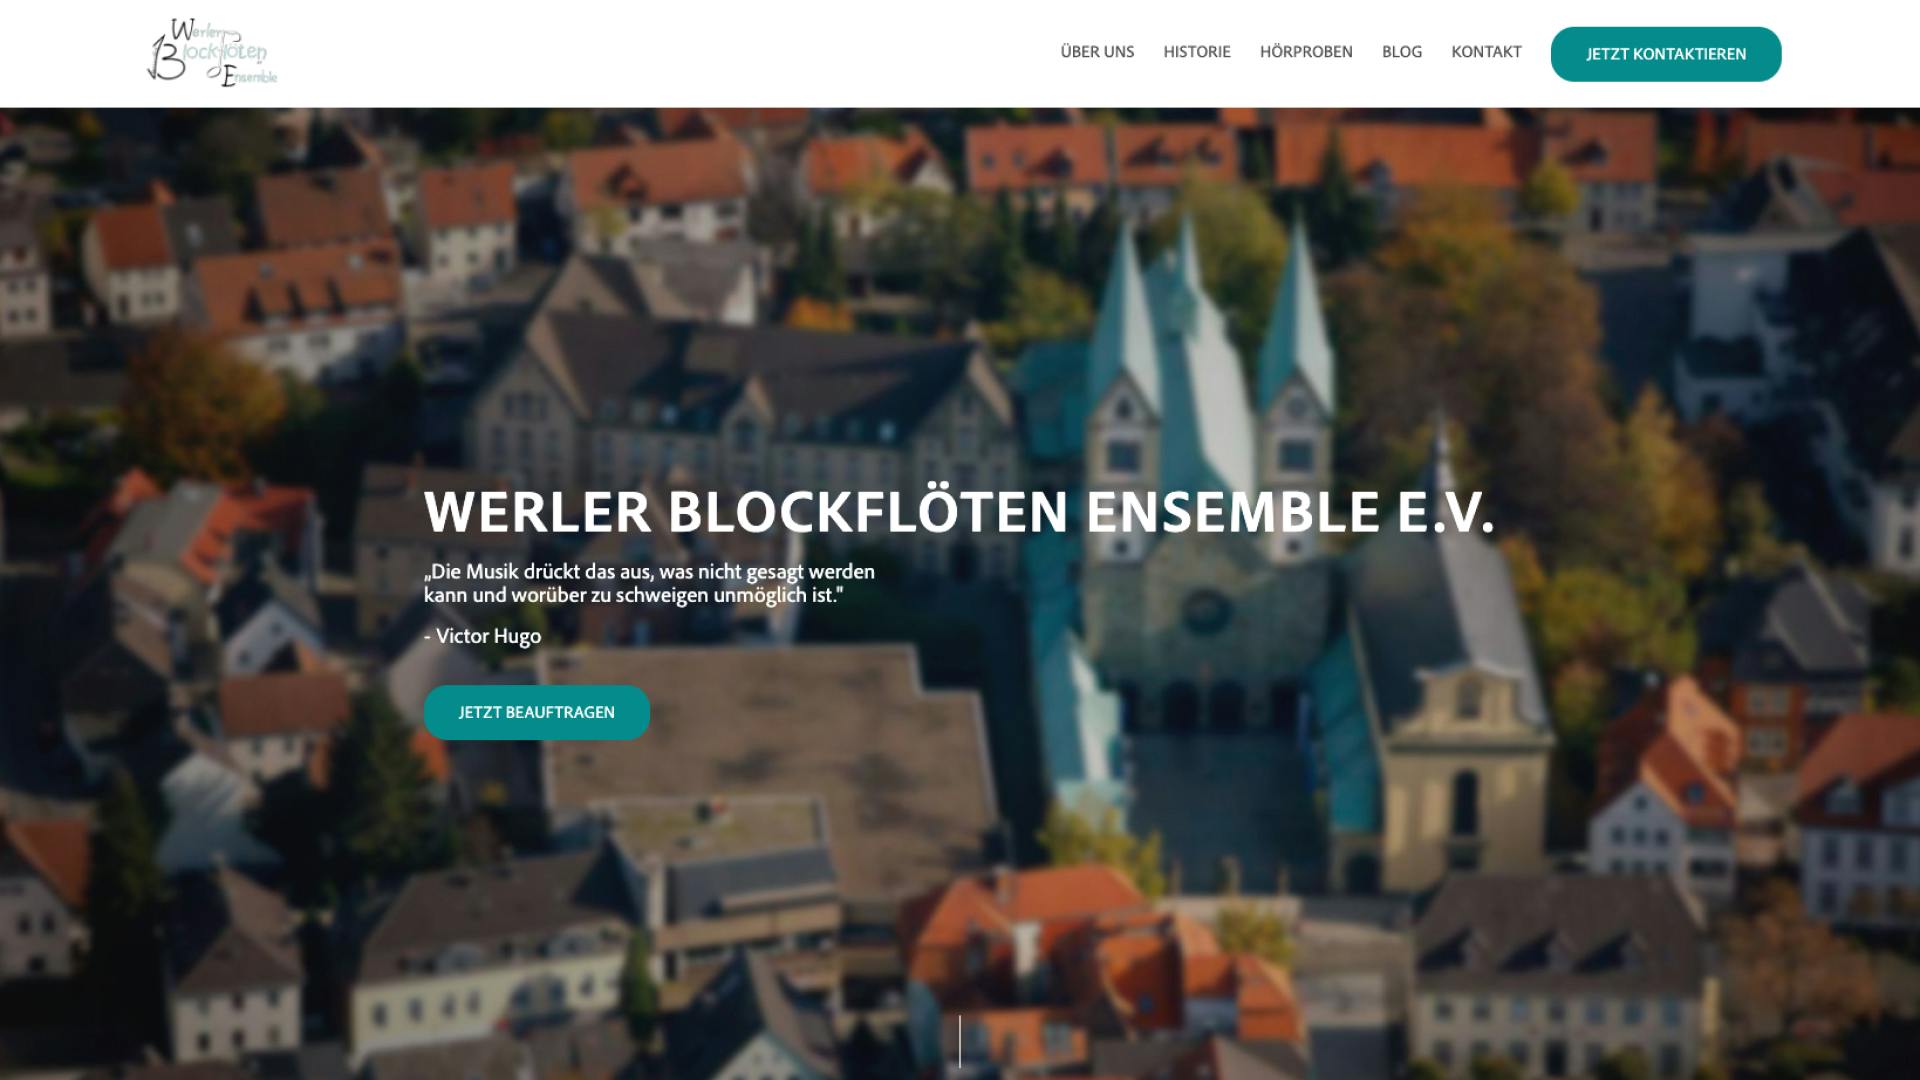 Website / Webflow Projekt Werler Blockflöten Ensemble